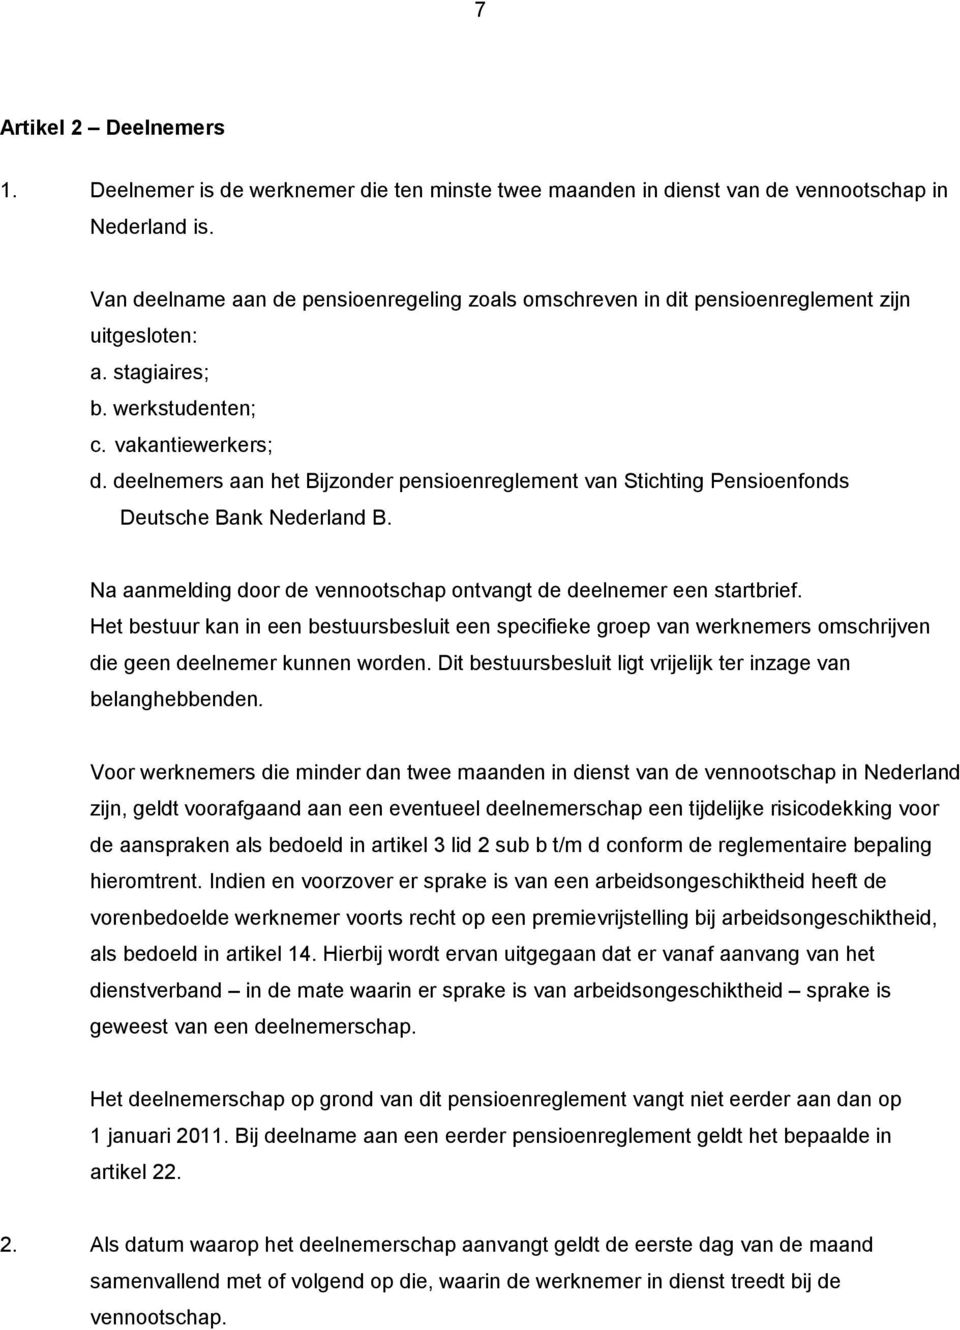 deelnemers aan het Bijzonder pensioenreglement van Stichting Pensioenfonds Deutsche Bank Nederland B. Na aanmelding door de vennootschap ontvangt de deelnemer een startbrief.